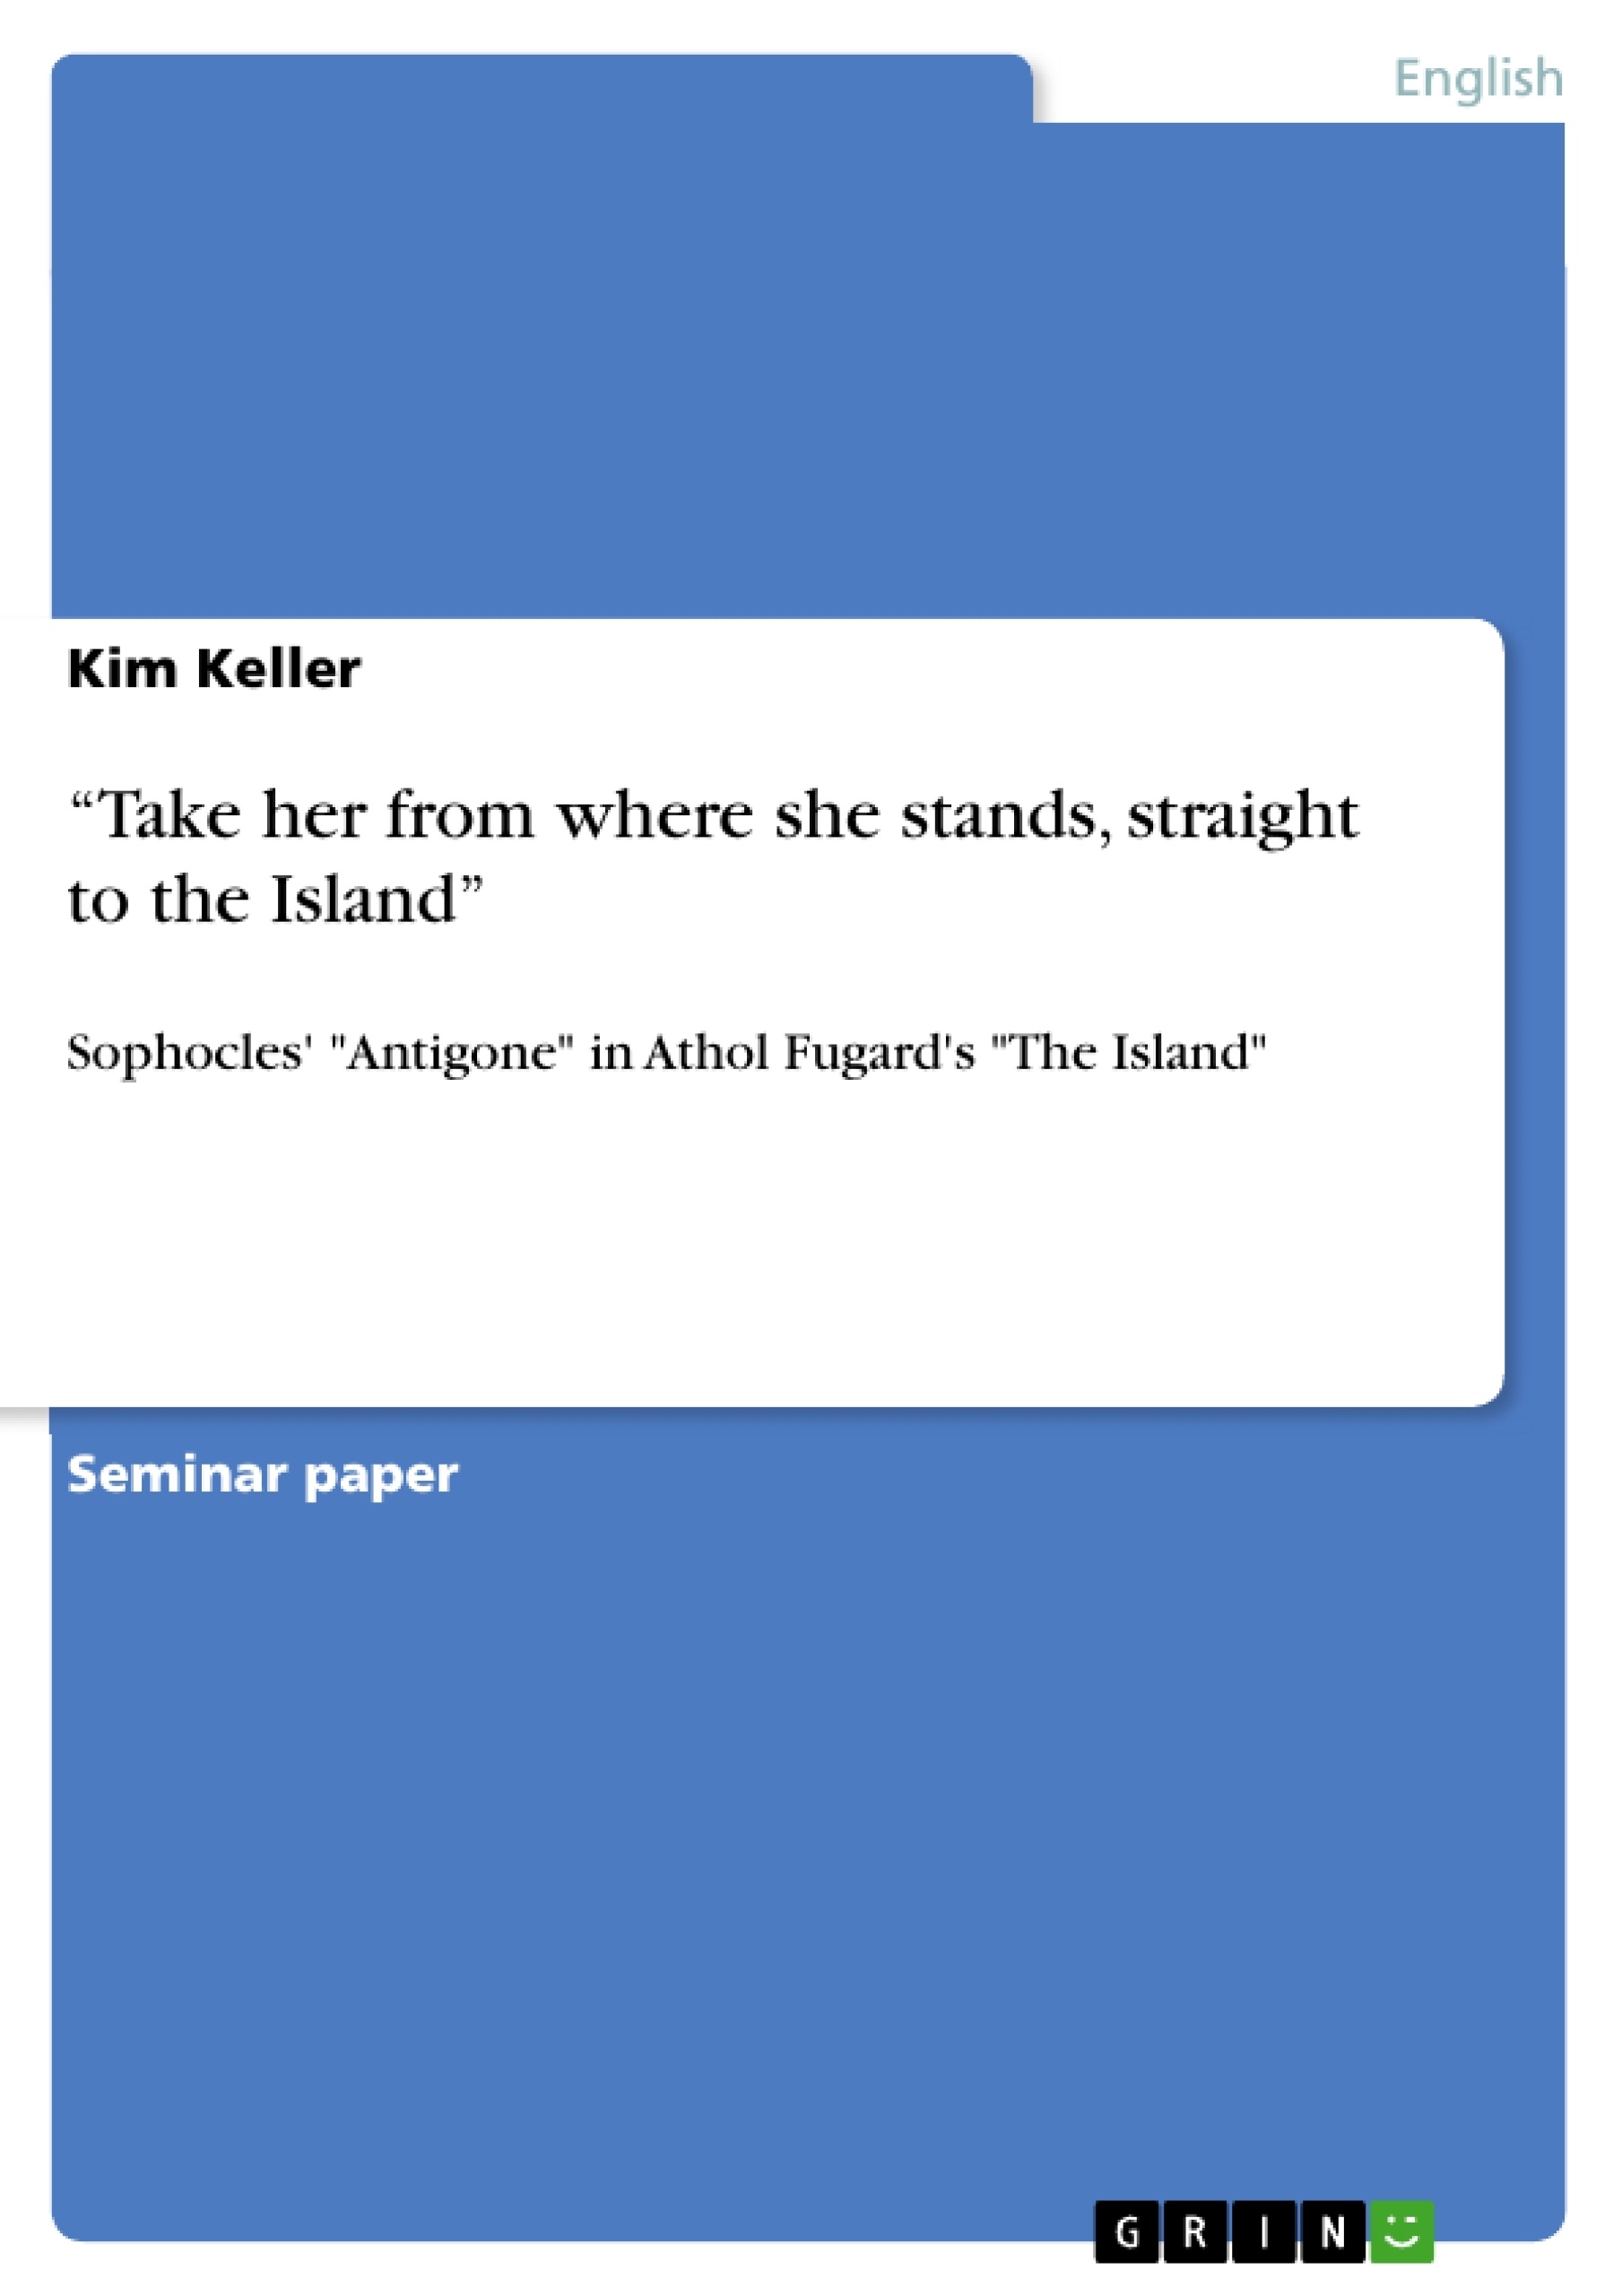 The Island By Athol Fugard Pdf Reader